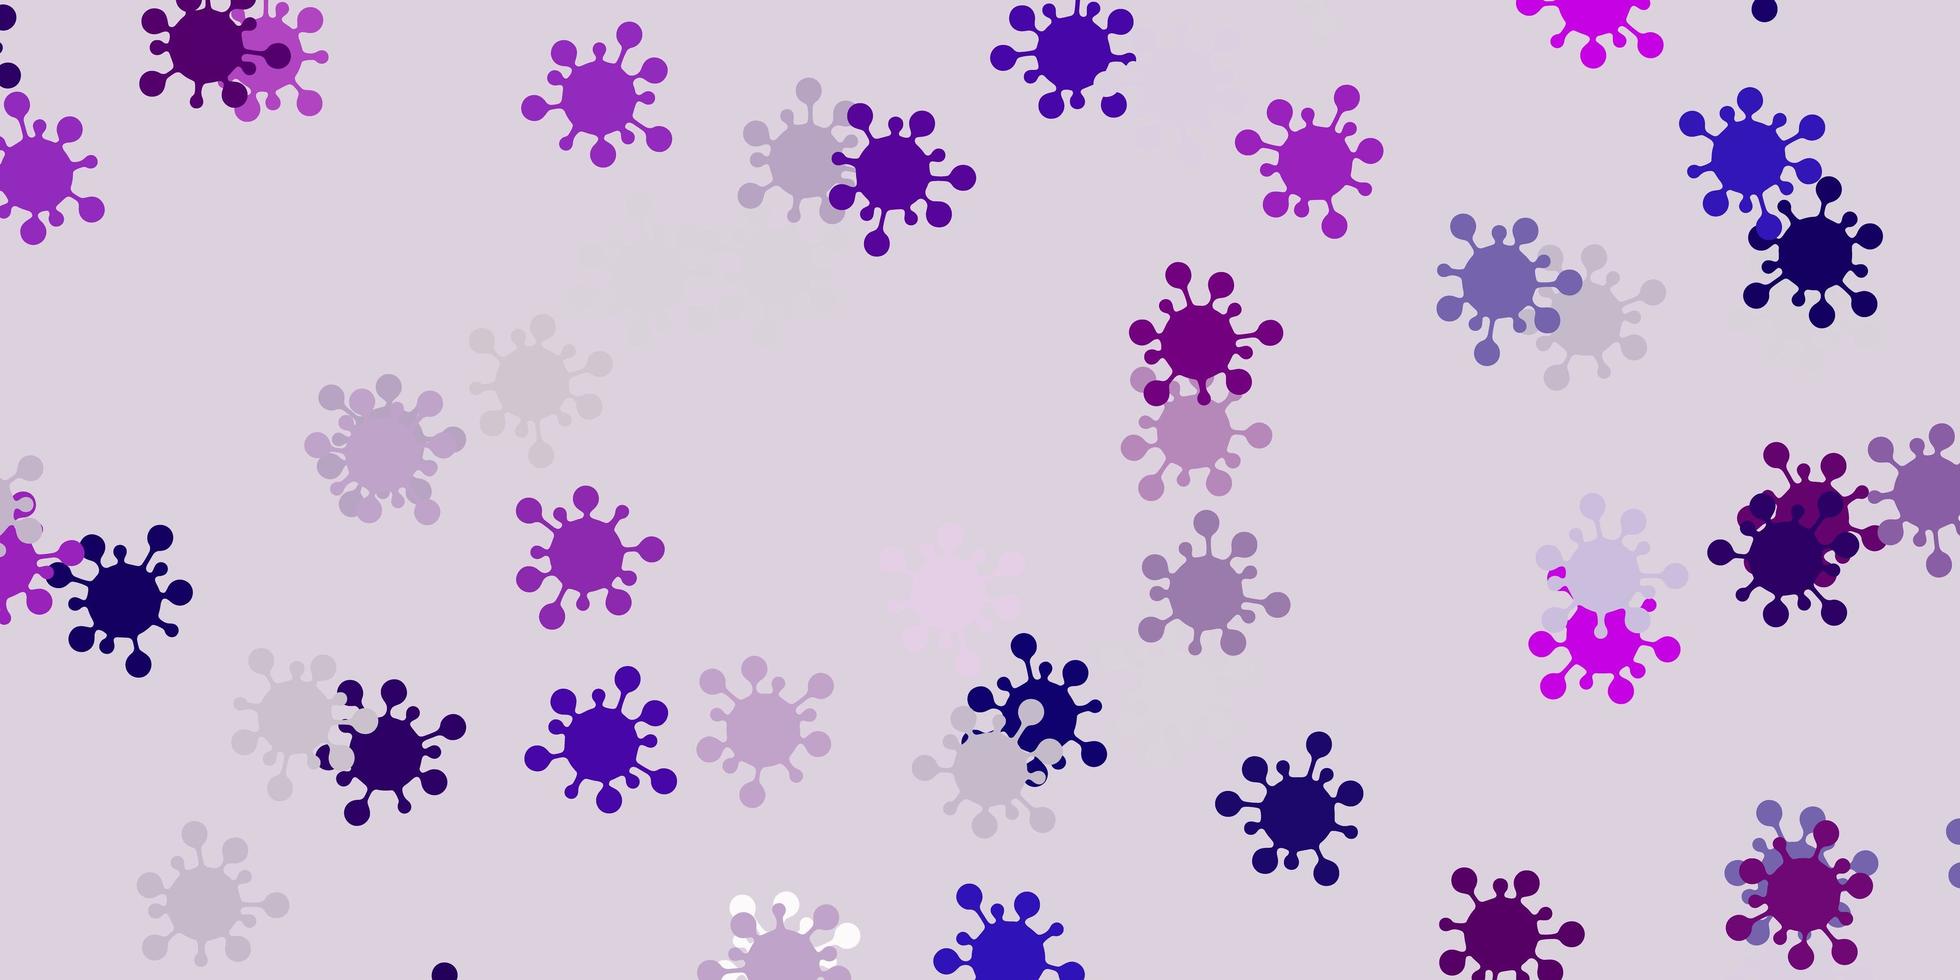 texture vettoriale viola chiaro con simboli di malattia.